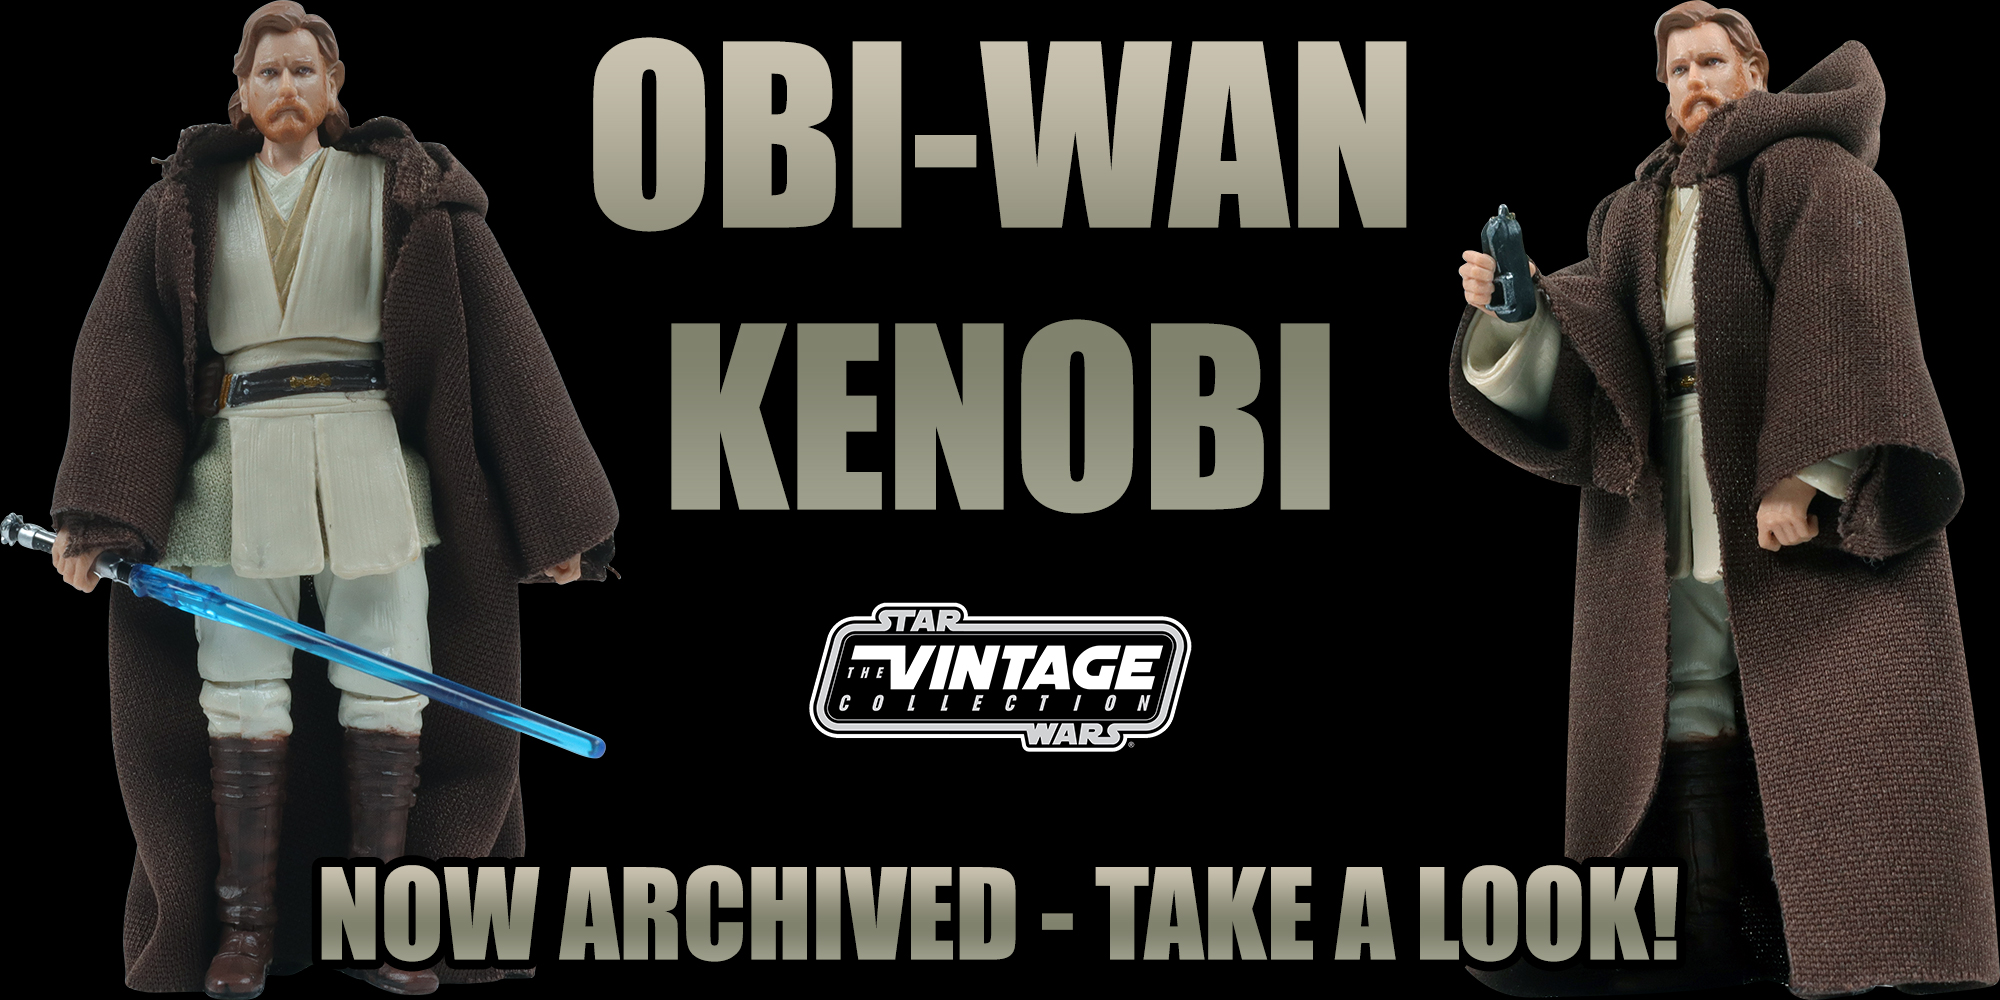 Obi-Wan Kenobi VC31